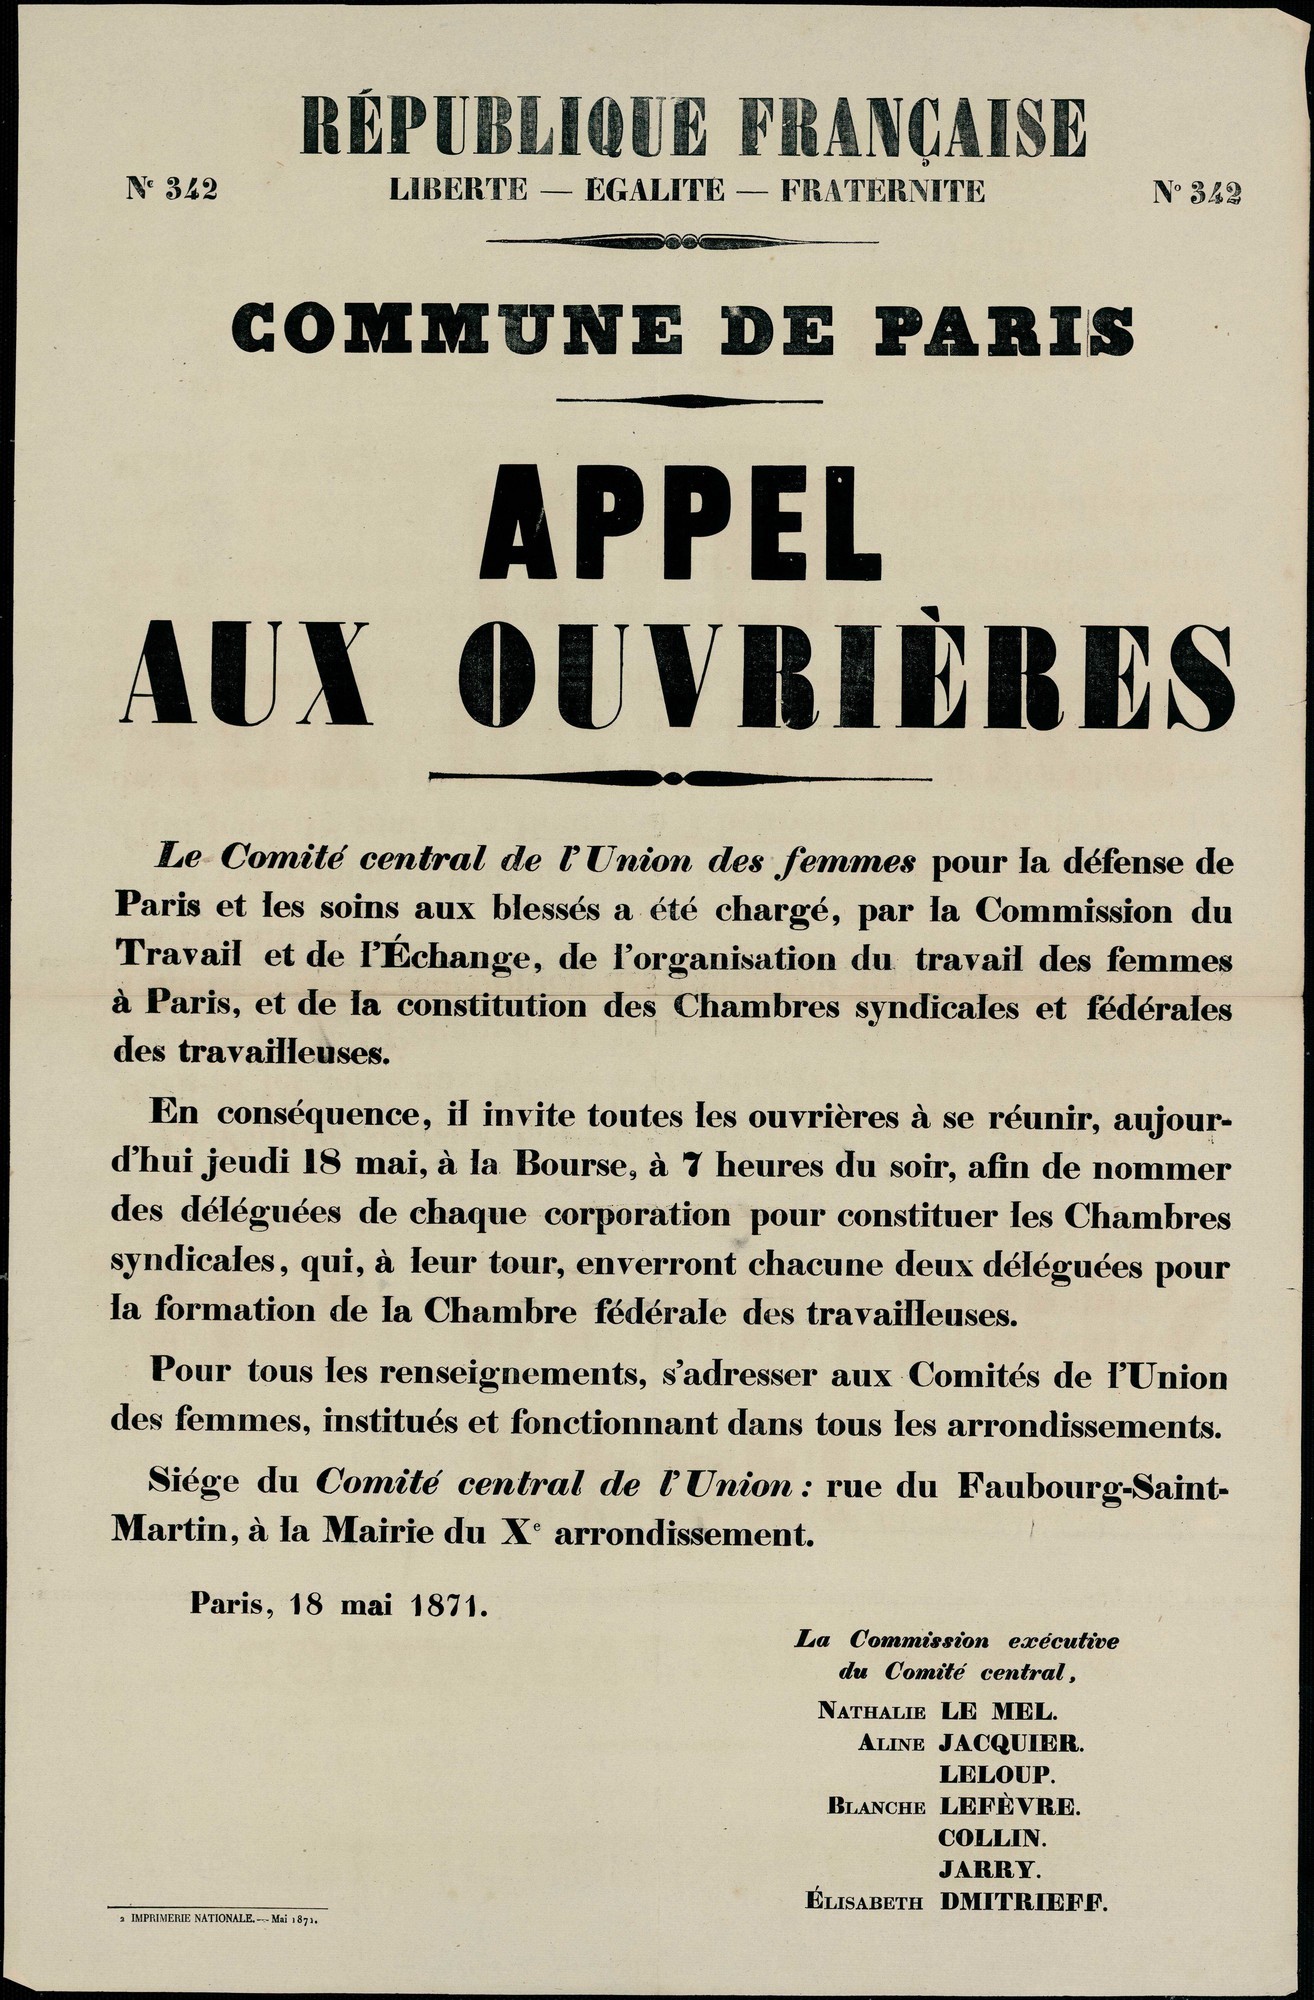 Affiche de la Commune N° 342 du 18 mai 1871 - Appel aux ouvrières  (source La contemporaine à Nanterre - argonnaute.parisnanterre.fr)